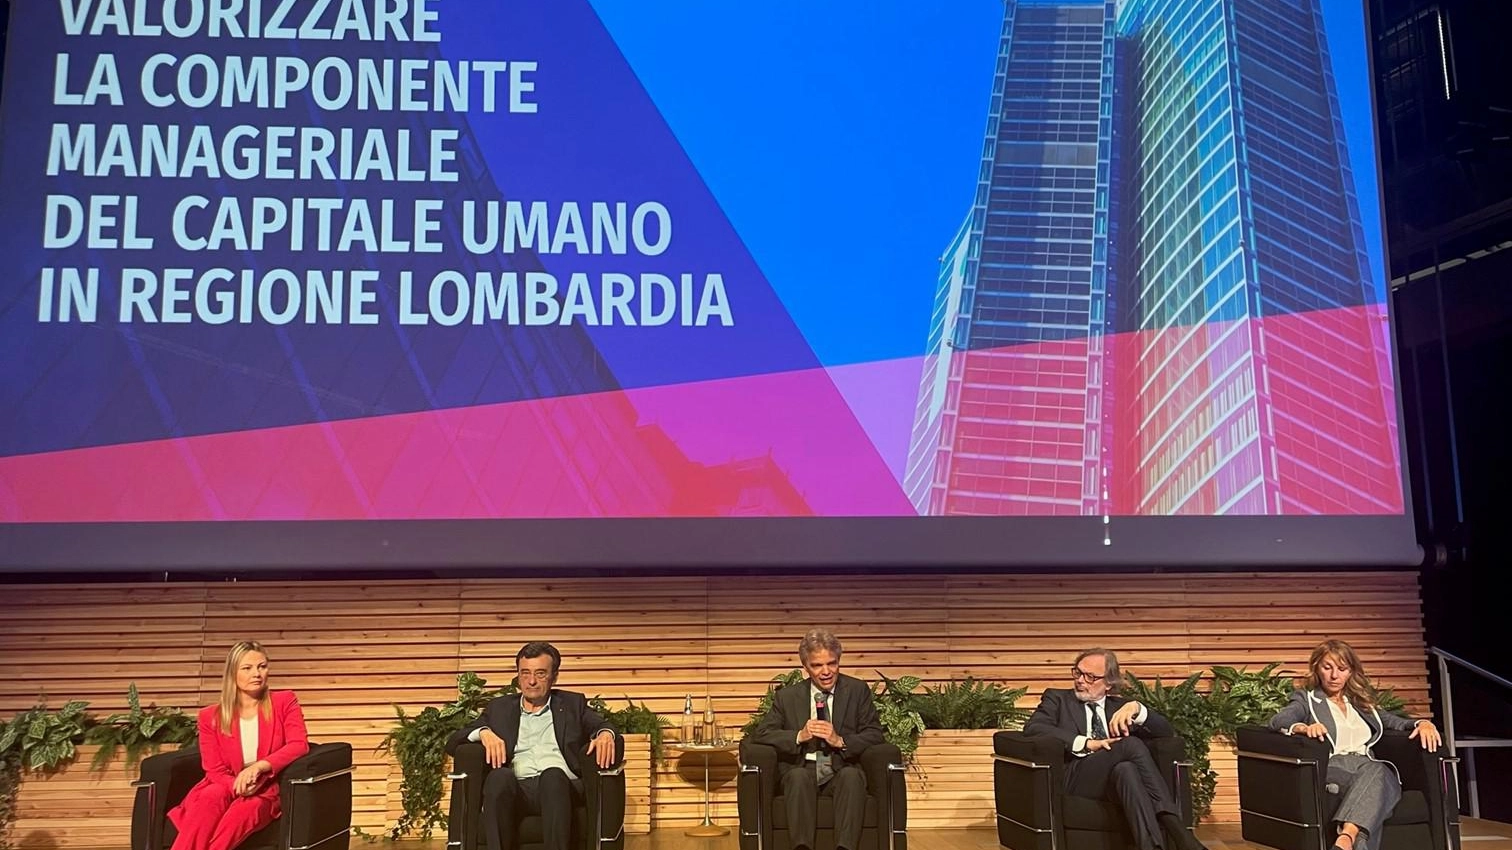 
"Regione Lombardia: 1,5 milioni di euro per favorire l'occupazione dei dirigenti disoccupati"